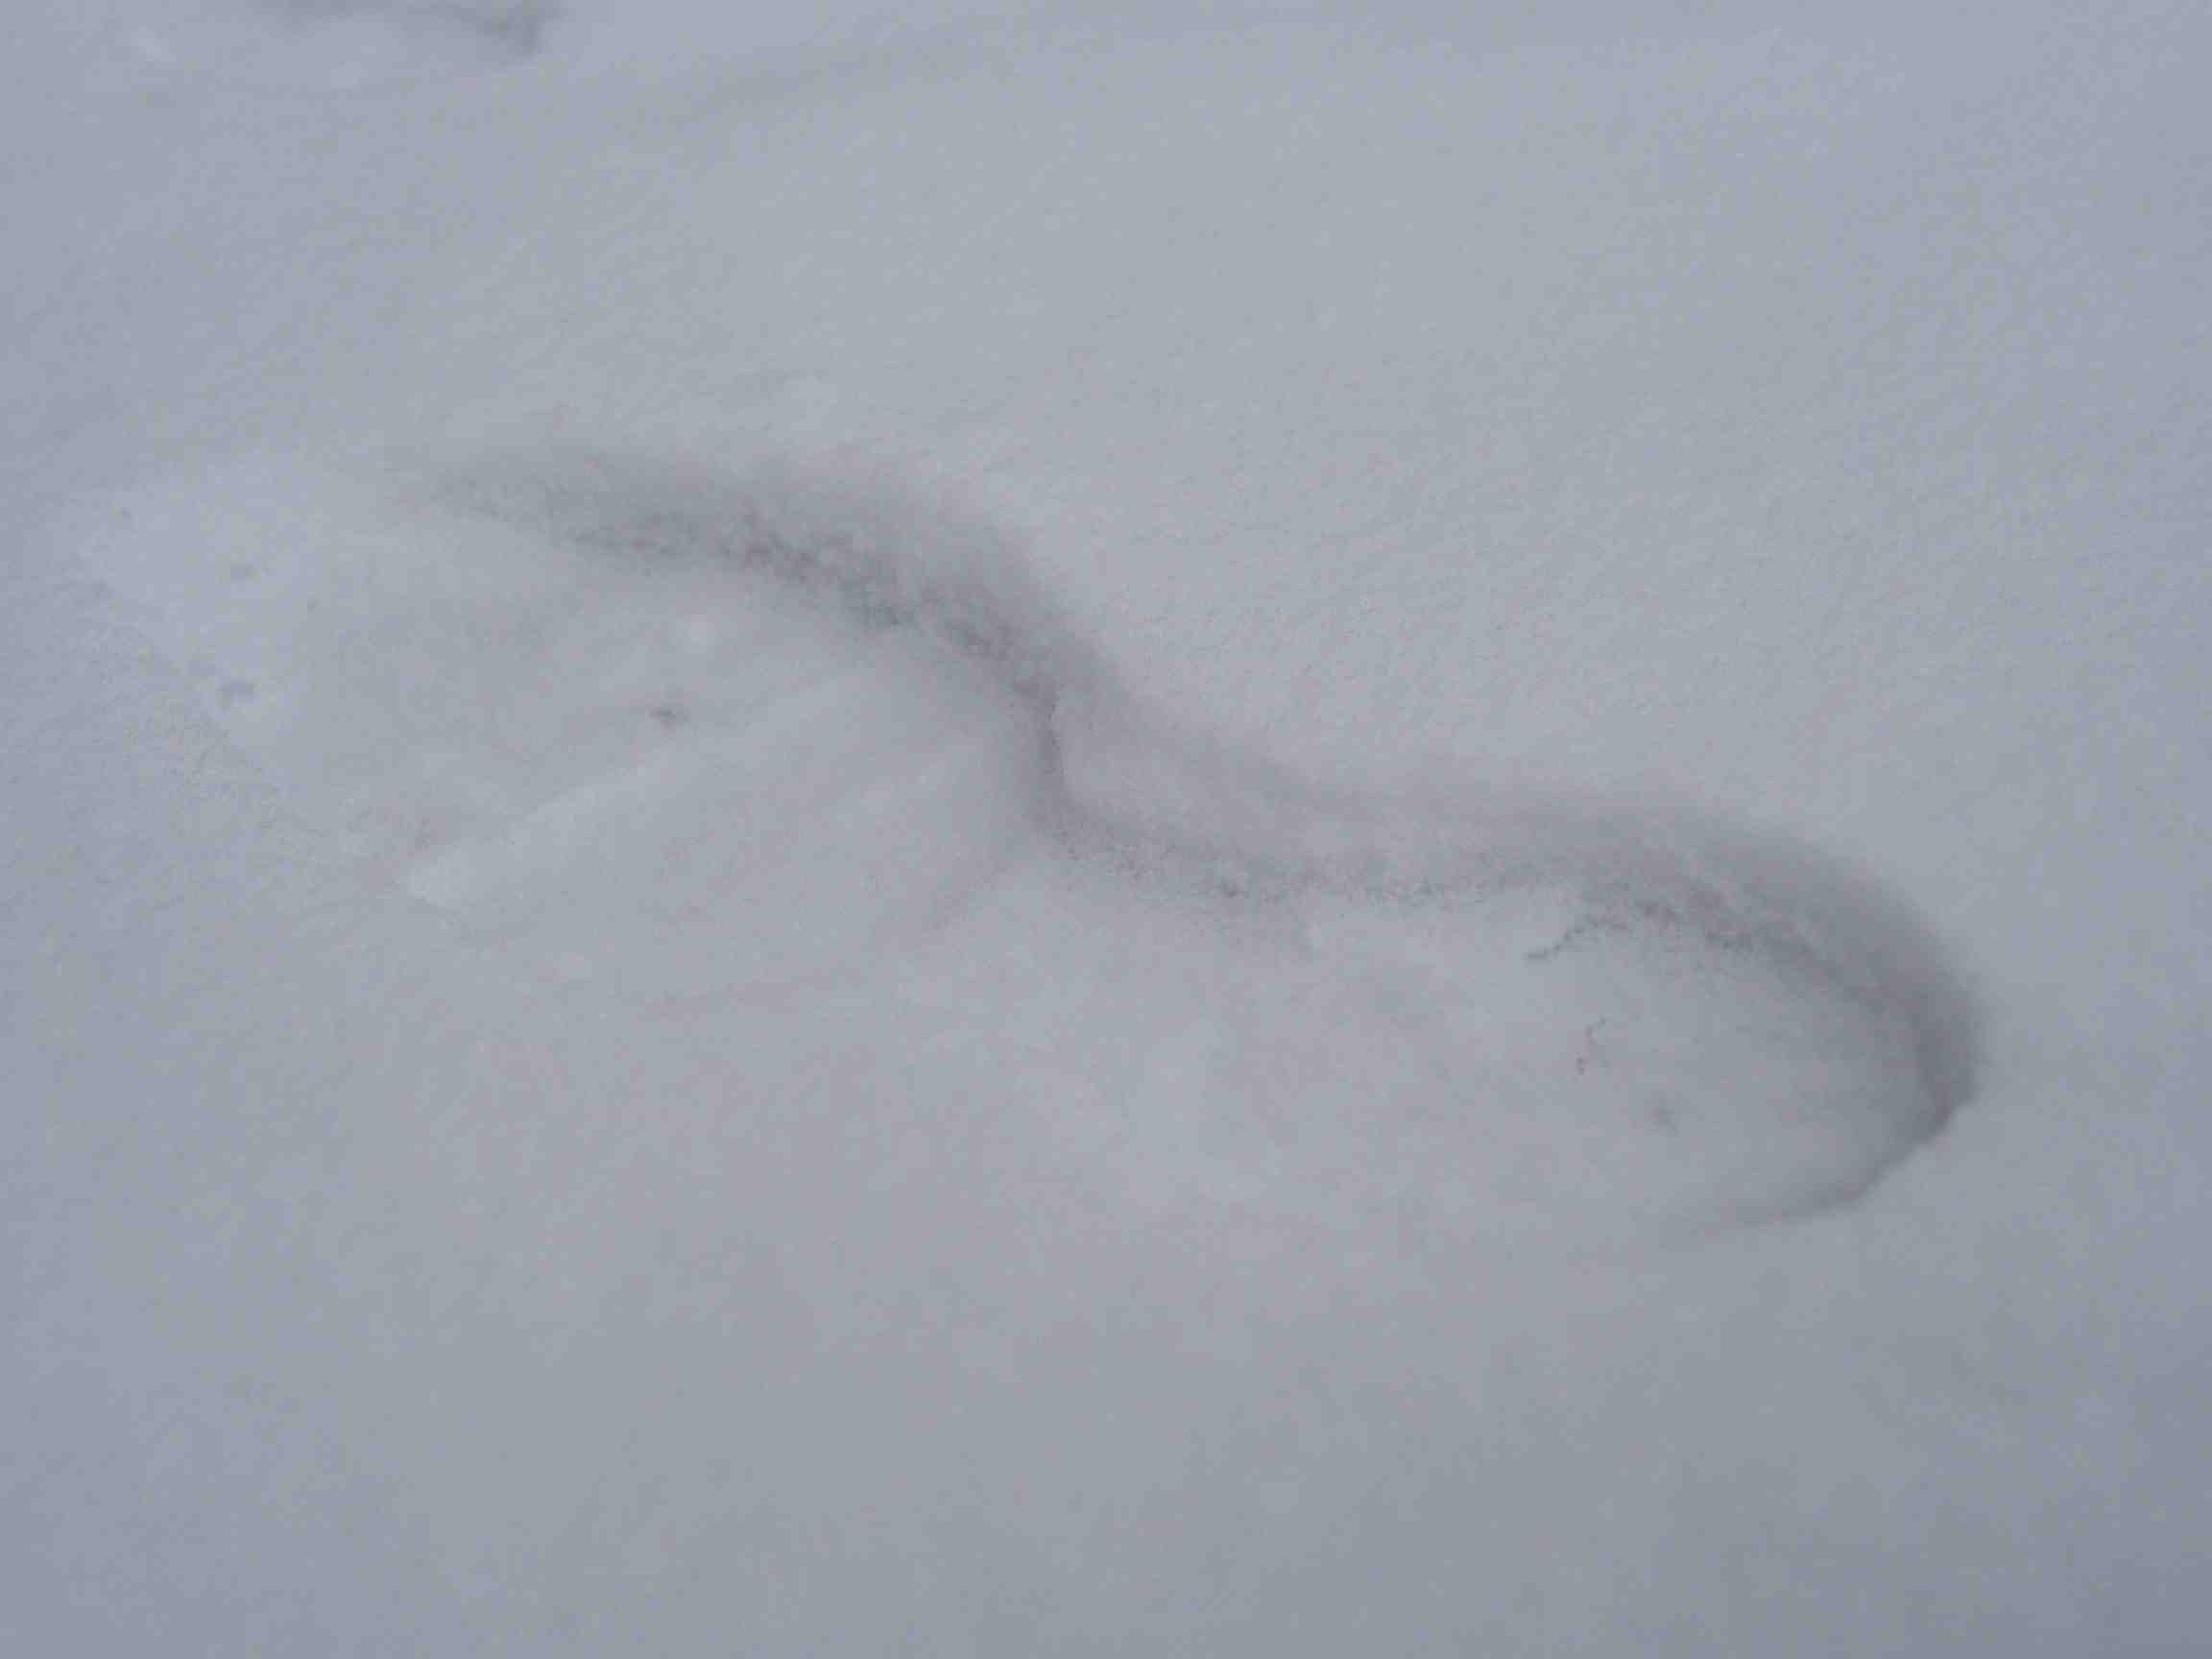 snow_footstep2.jpg